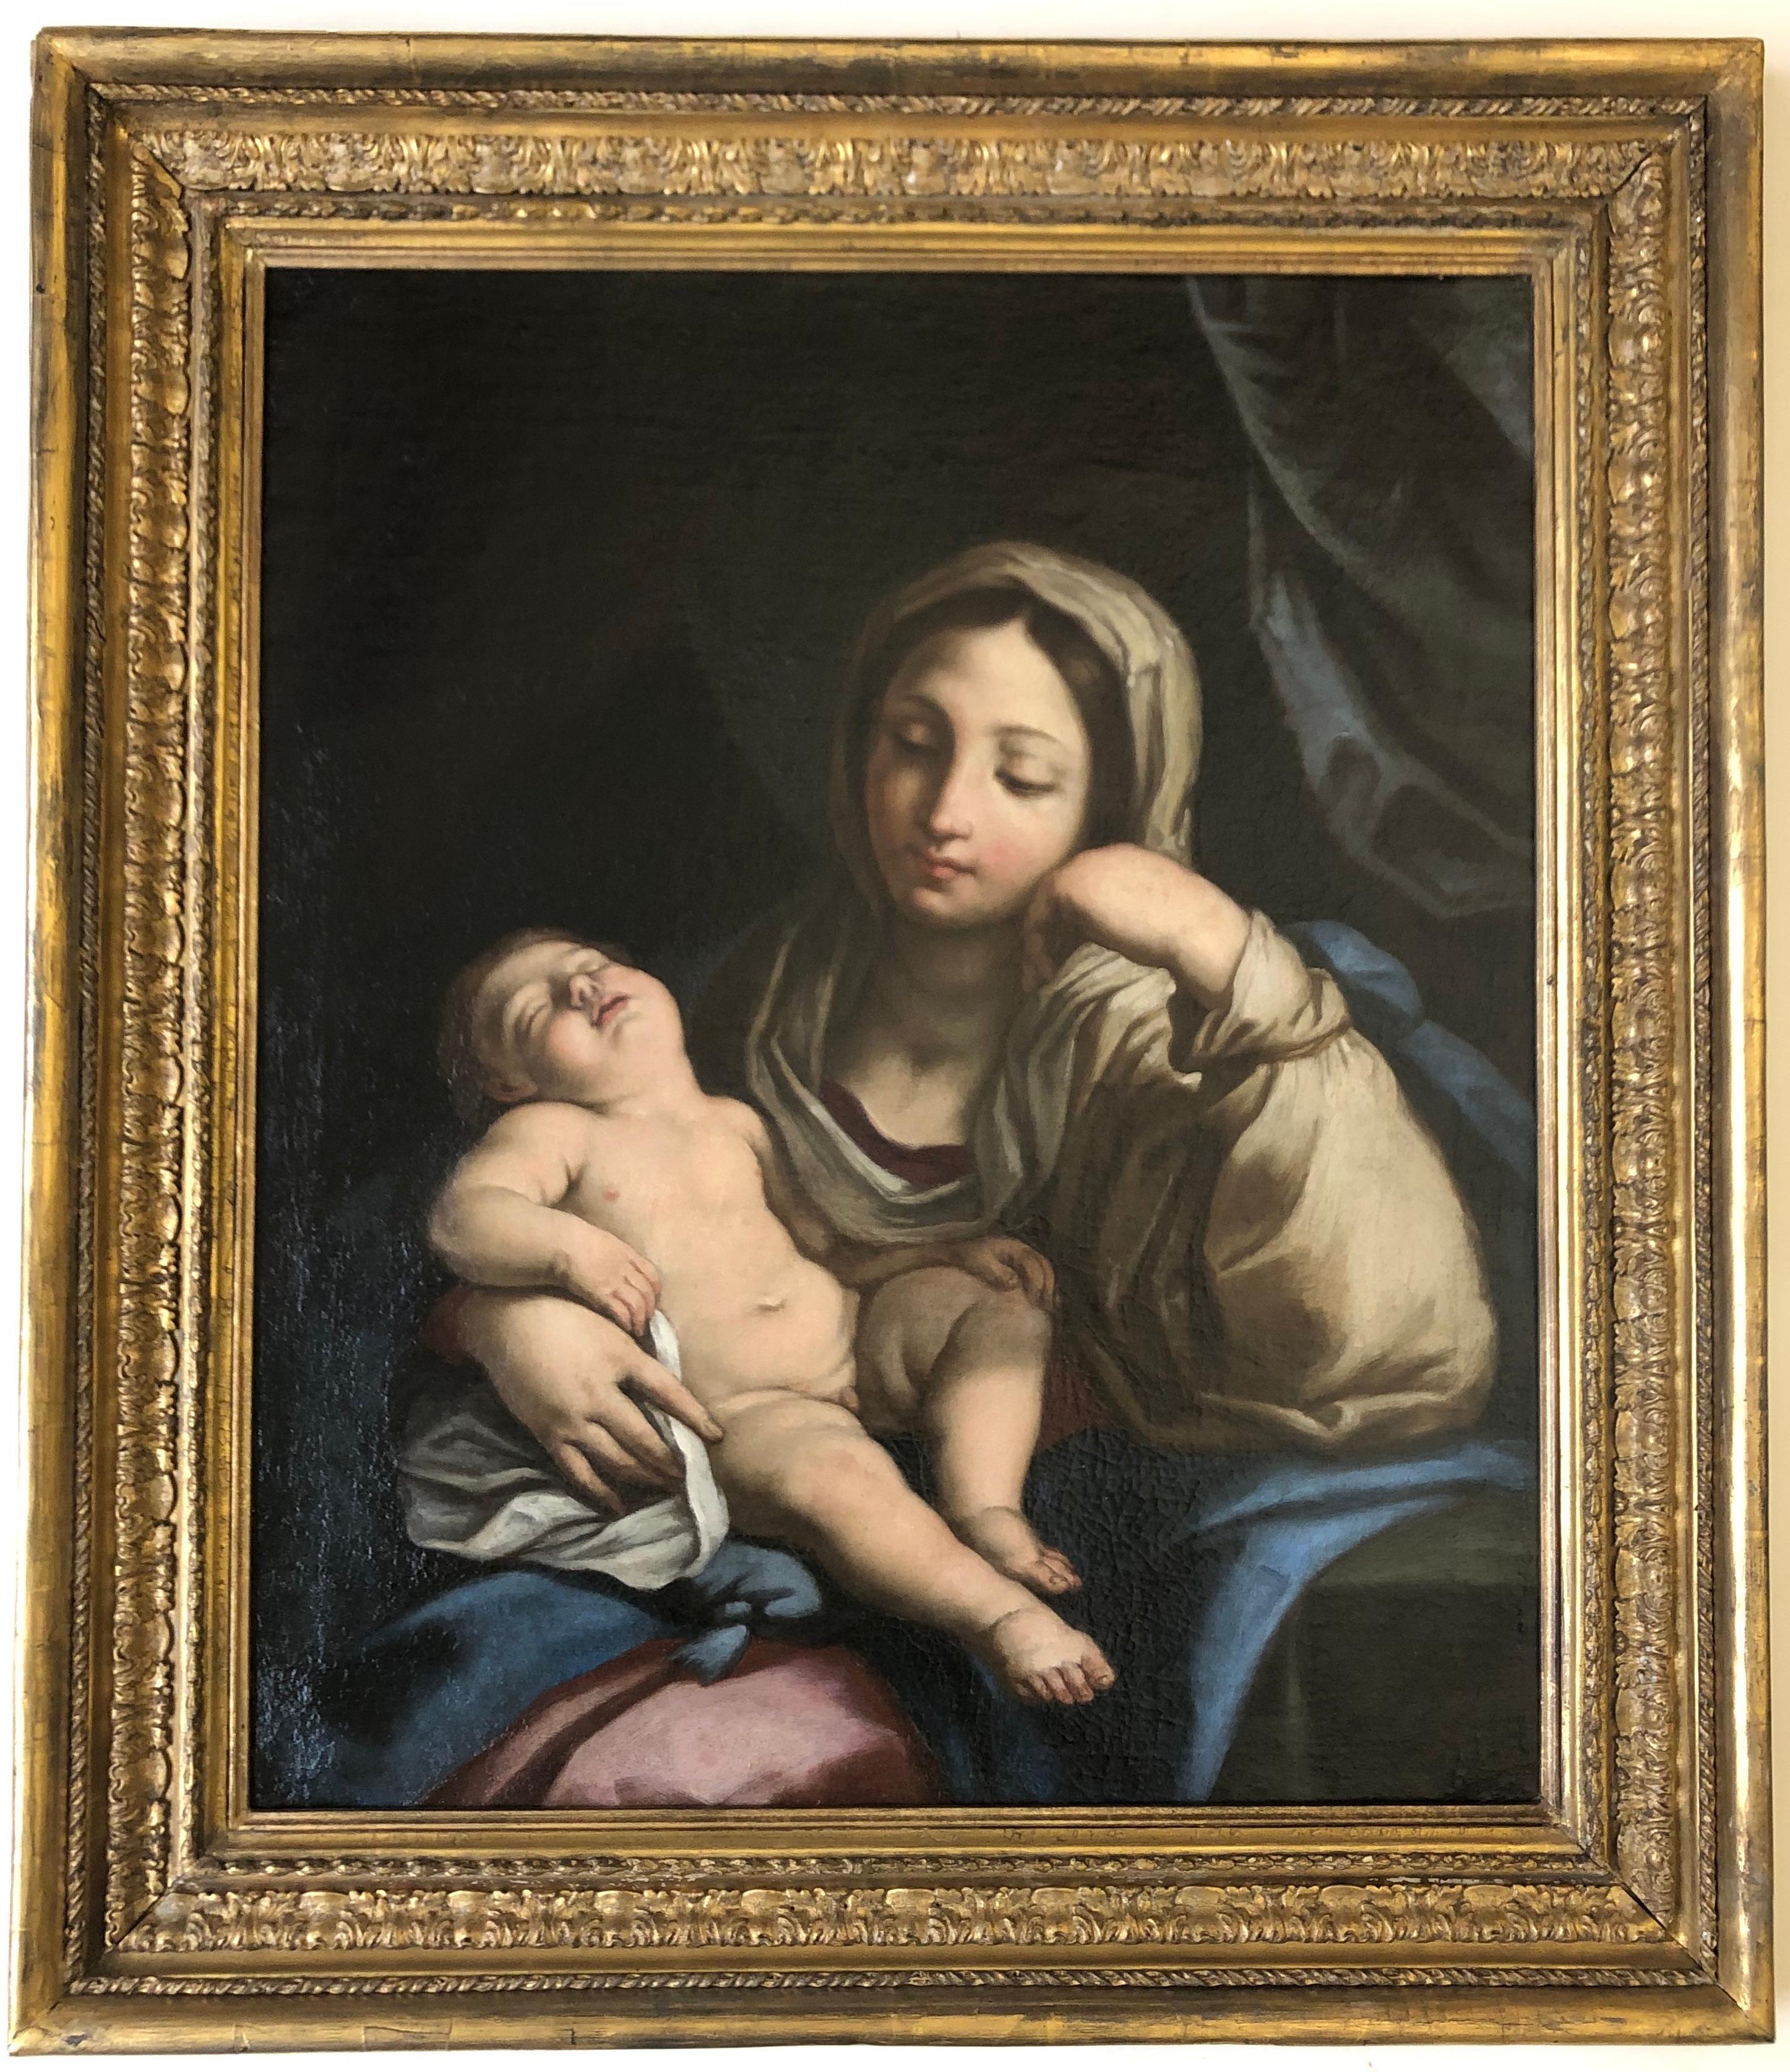 Kreis der Maratta, Maria und Kind, Madonna, Christus, antiker Rahmen, alter Meister – Painting von Workshop Of Carlo Maratta